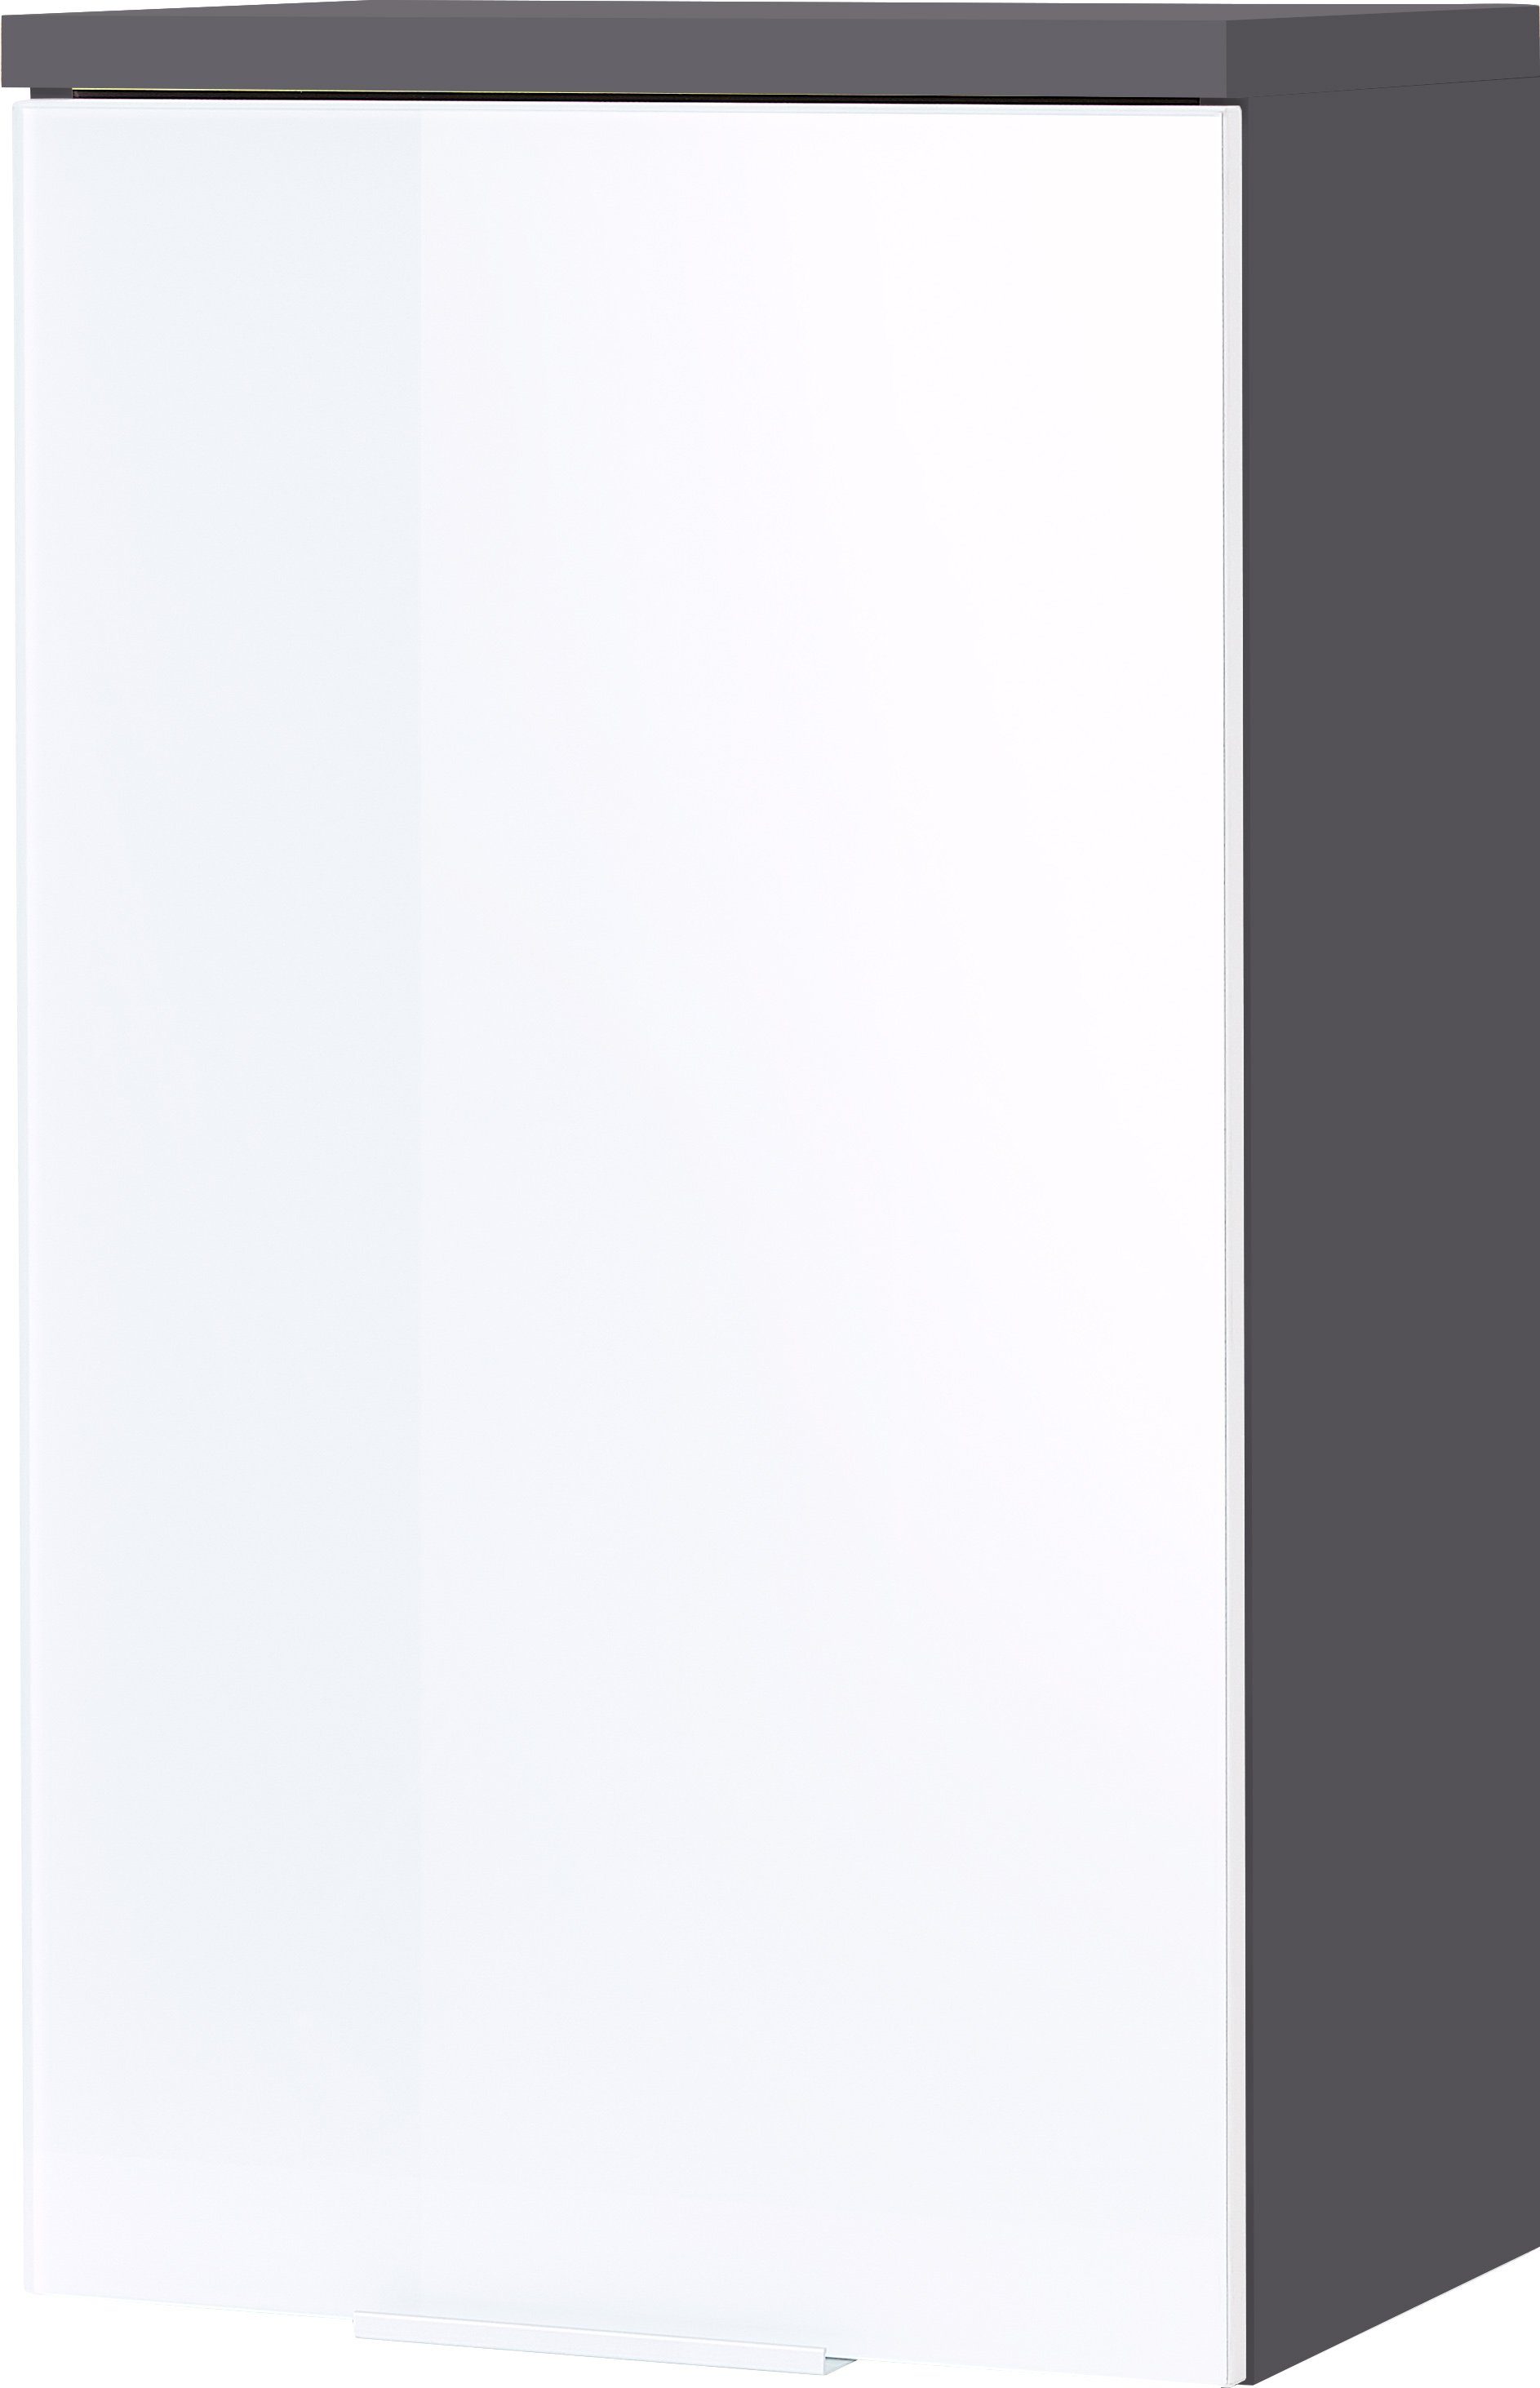 KADIMA DESIGN Midischrank LEINE Badehängeschrank Weiß Grau 39 x 69 x 27 | Midischränke